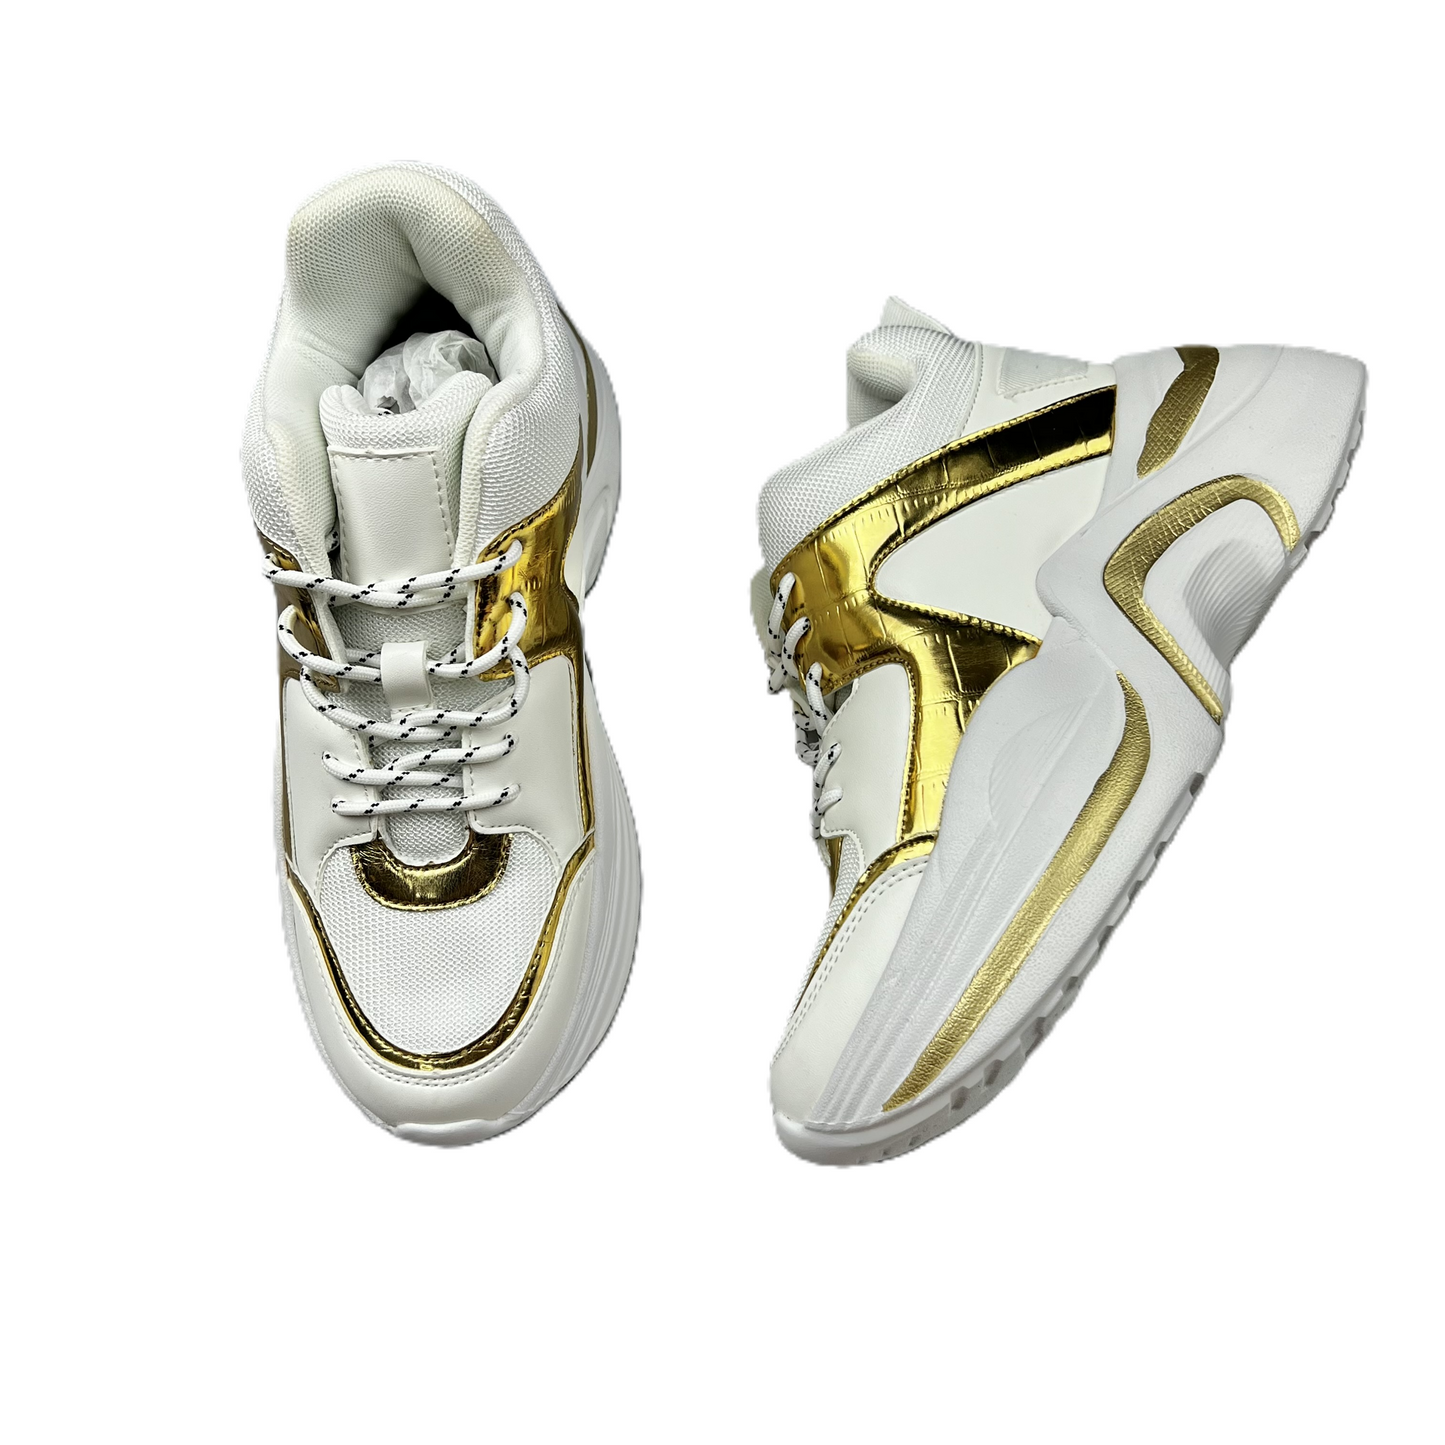 Gold & White Shoes Sneakers Platform By Fashion Nova, Size: 8